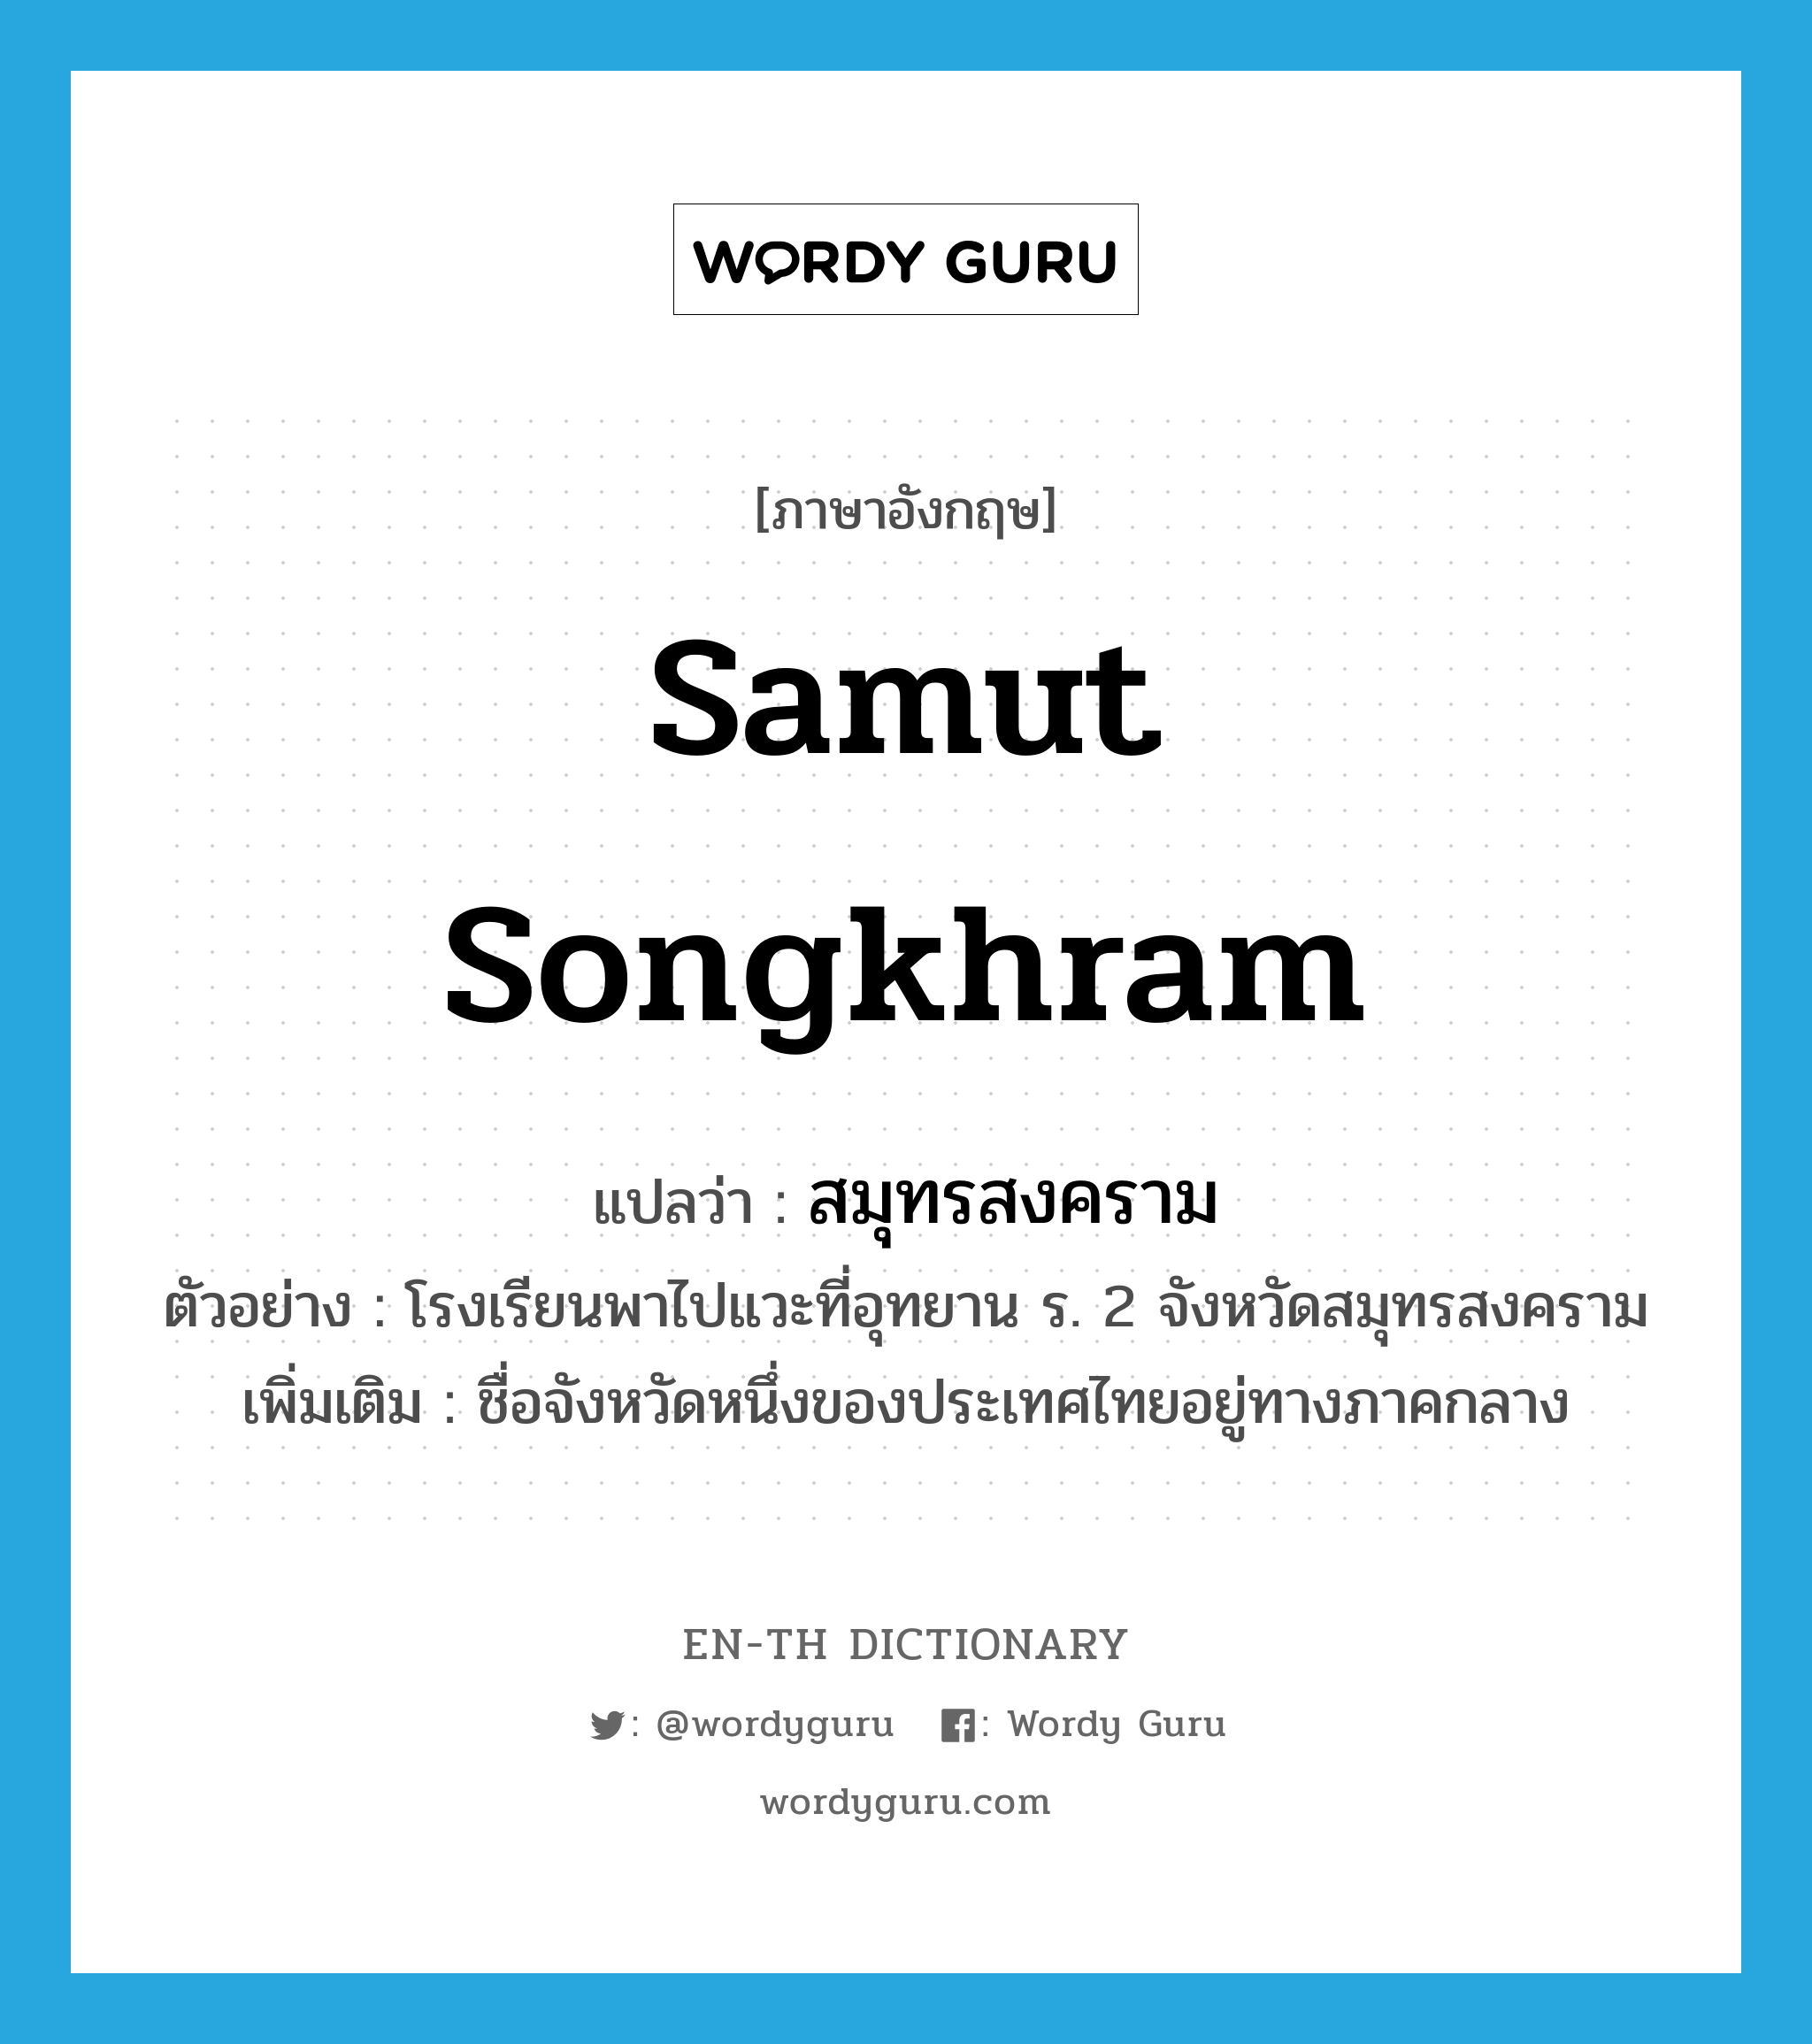 Samut Songkhram แปลว่า?, คำศัพท์ภาษาอังกฤษ Samut Songkhram แปลว่า สมุทรสงคราม ประเภท N ตัวอย่าง โรงเรียนพาไปแวะที่อุทยาน ร. 2 จังหวัดสมุทรสงคราม เพิ่มเติม ชื่อจังหวัดหนึ่งของประเทศไทยอยู่ทางภาคกลาง หมวด N